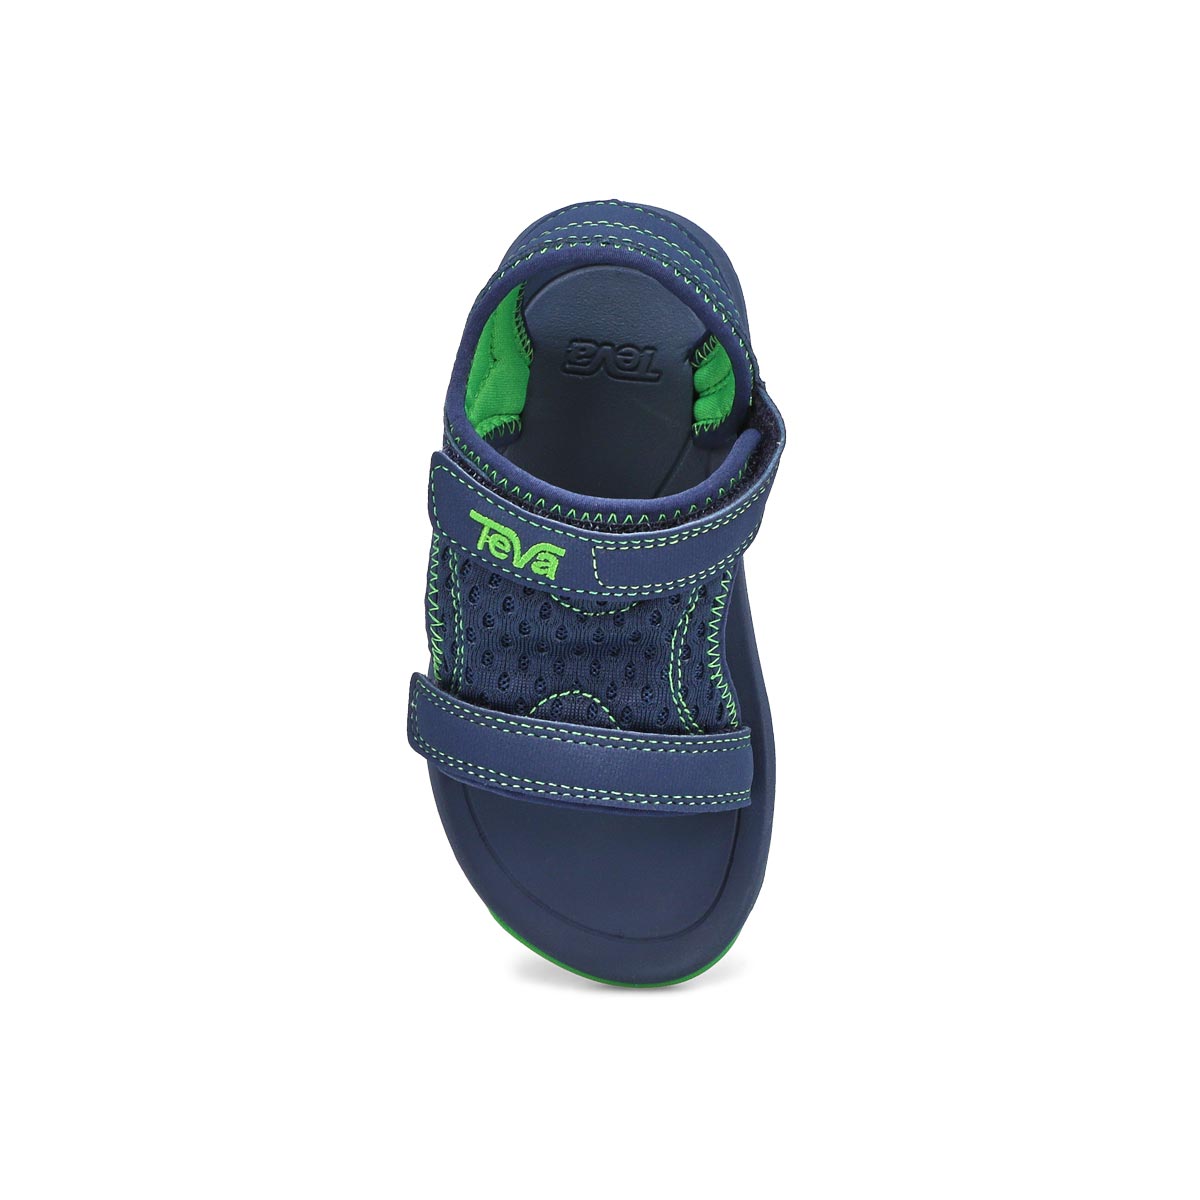 Infants' Psyclone XLT Sport Sandal - Navy